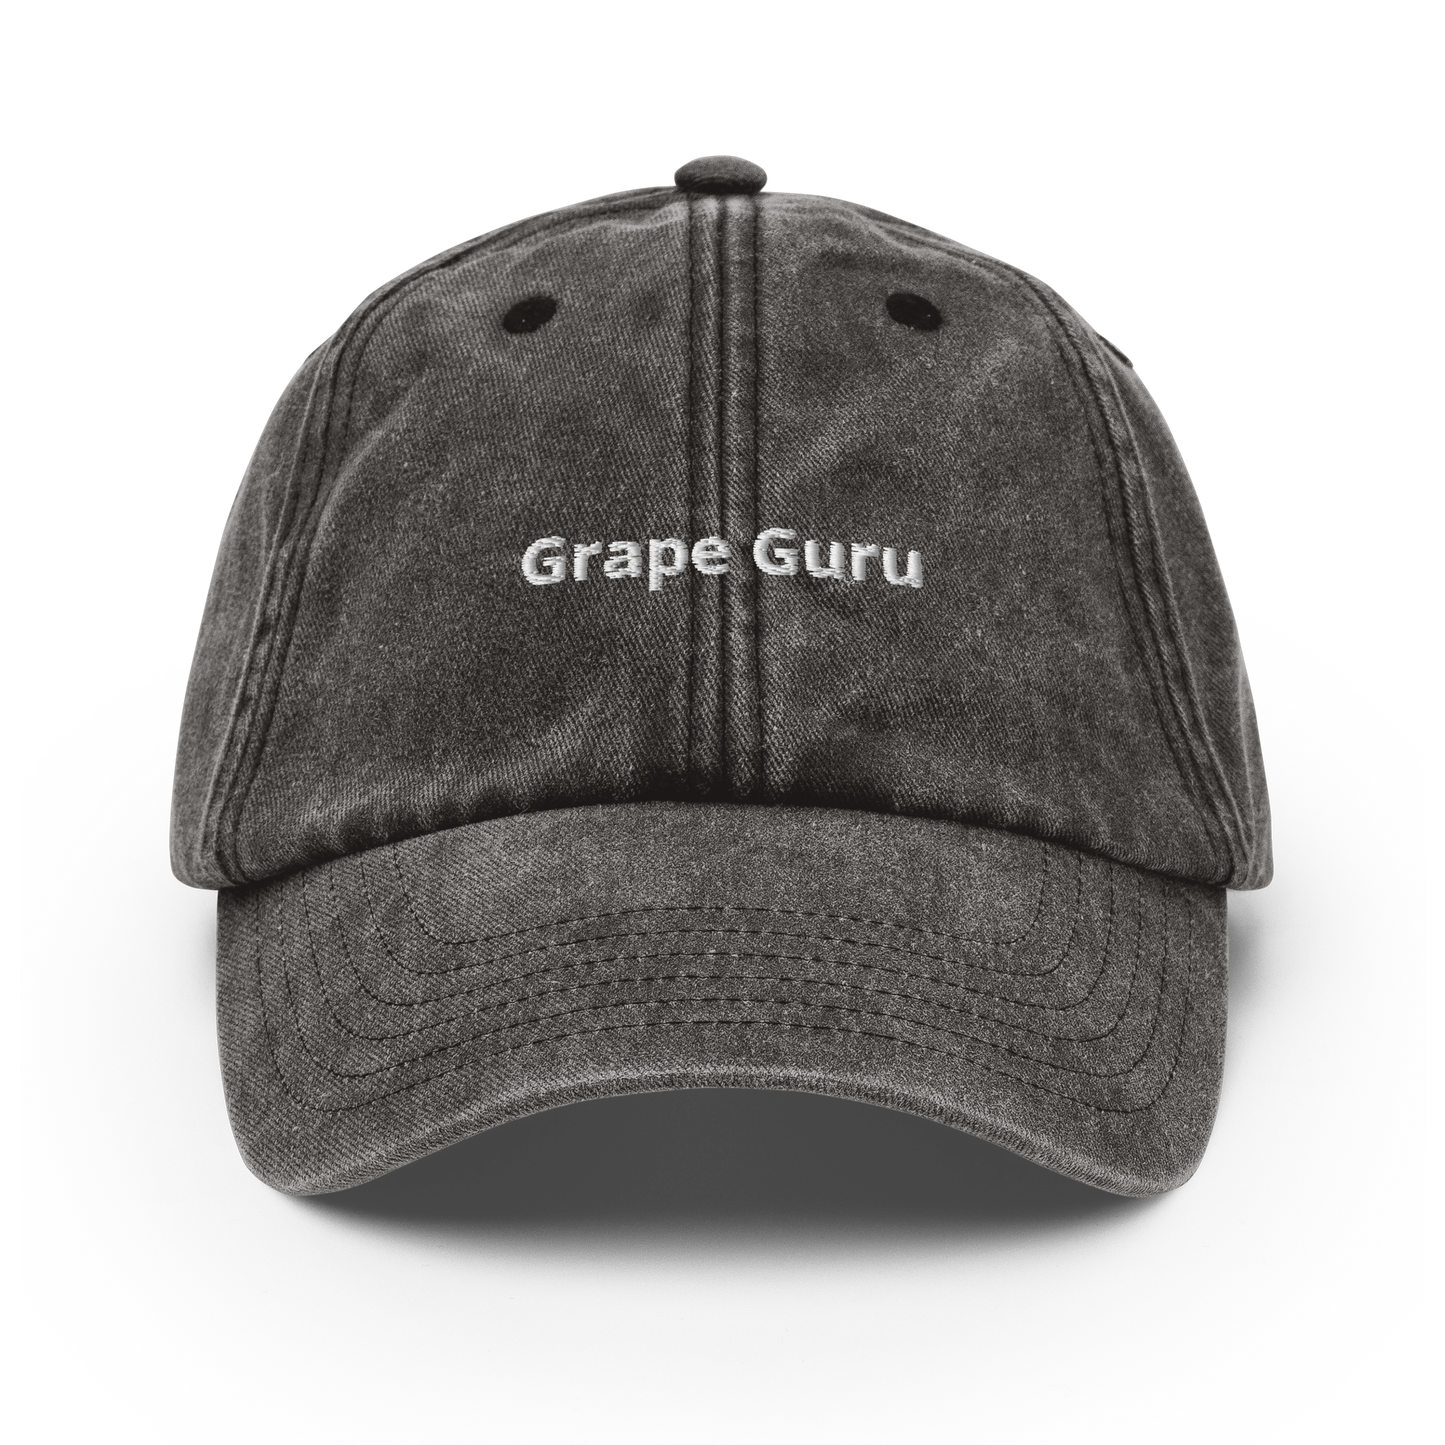 Grape Guru - Vintage Hat